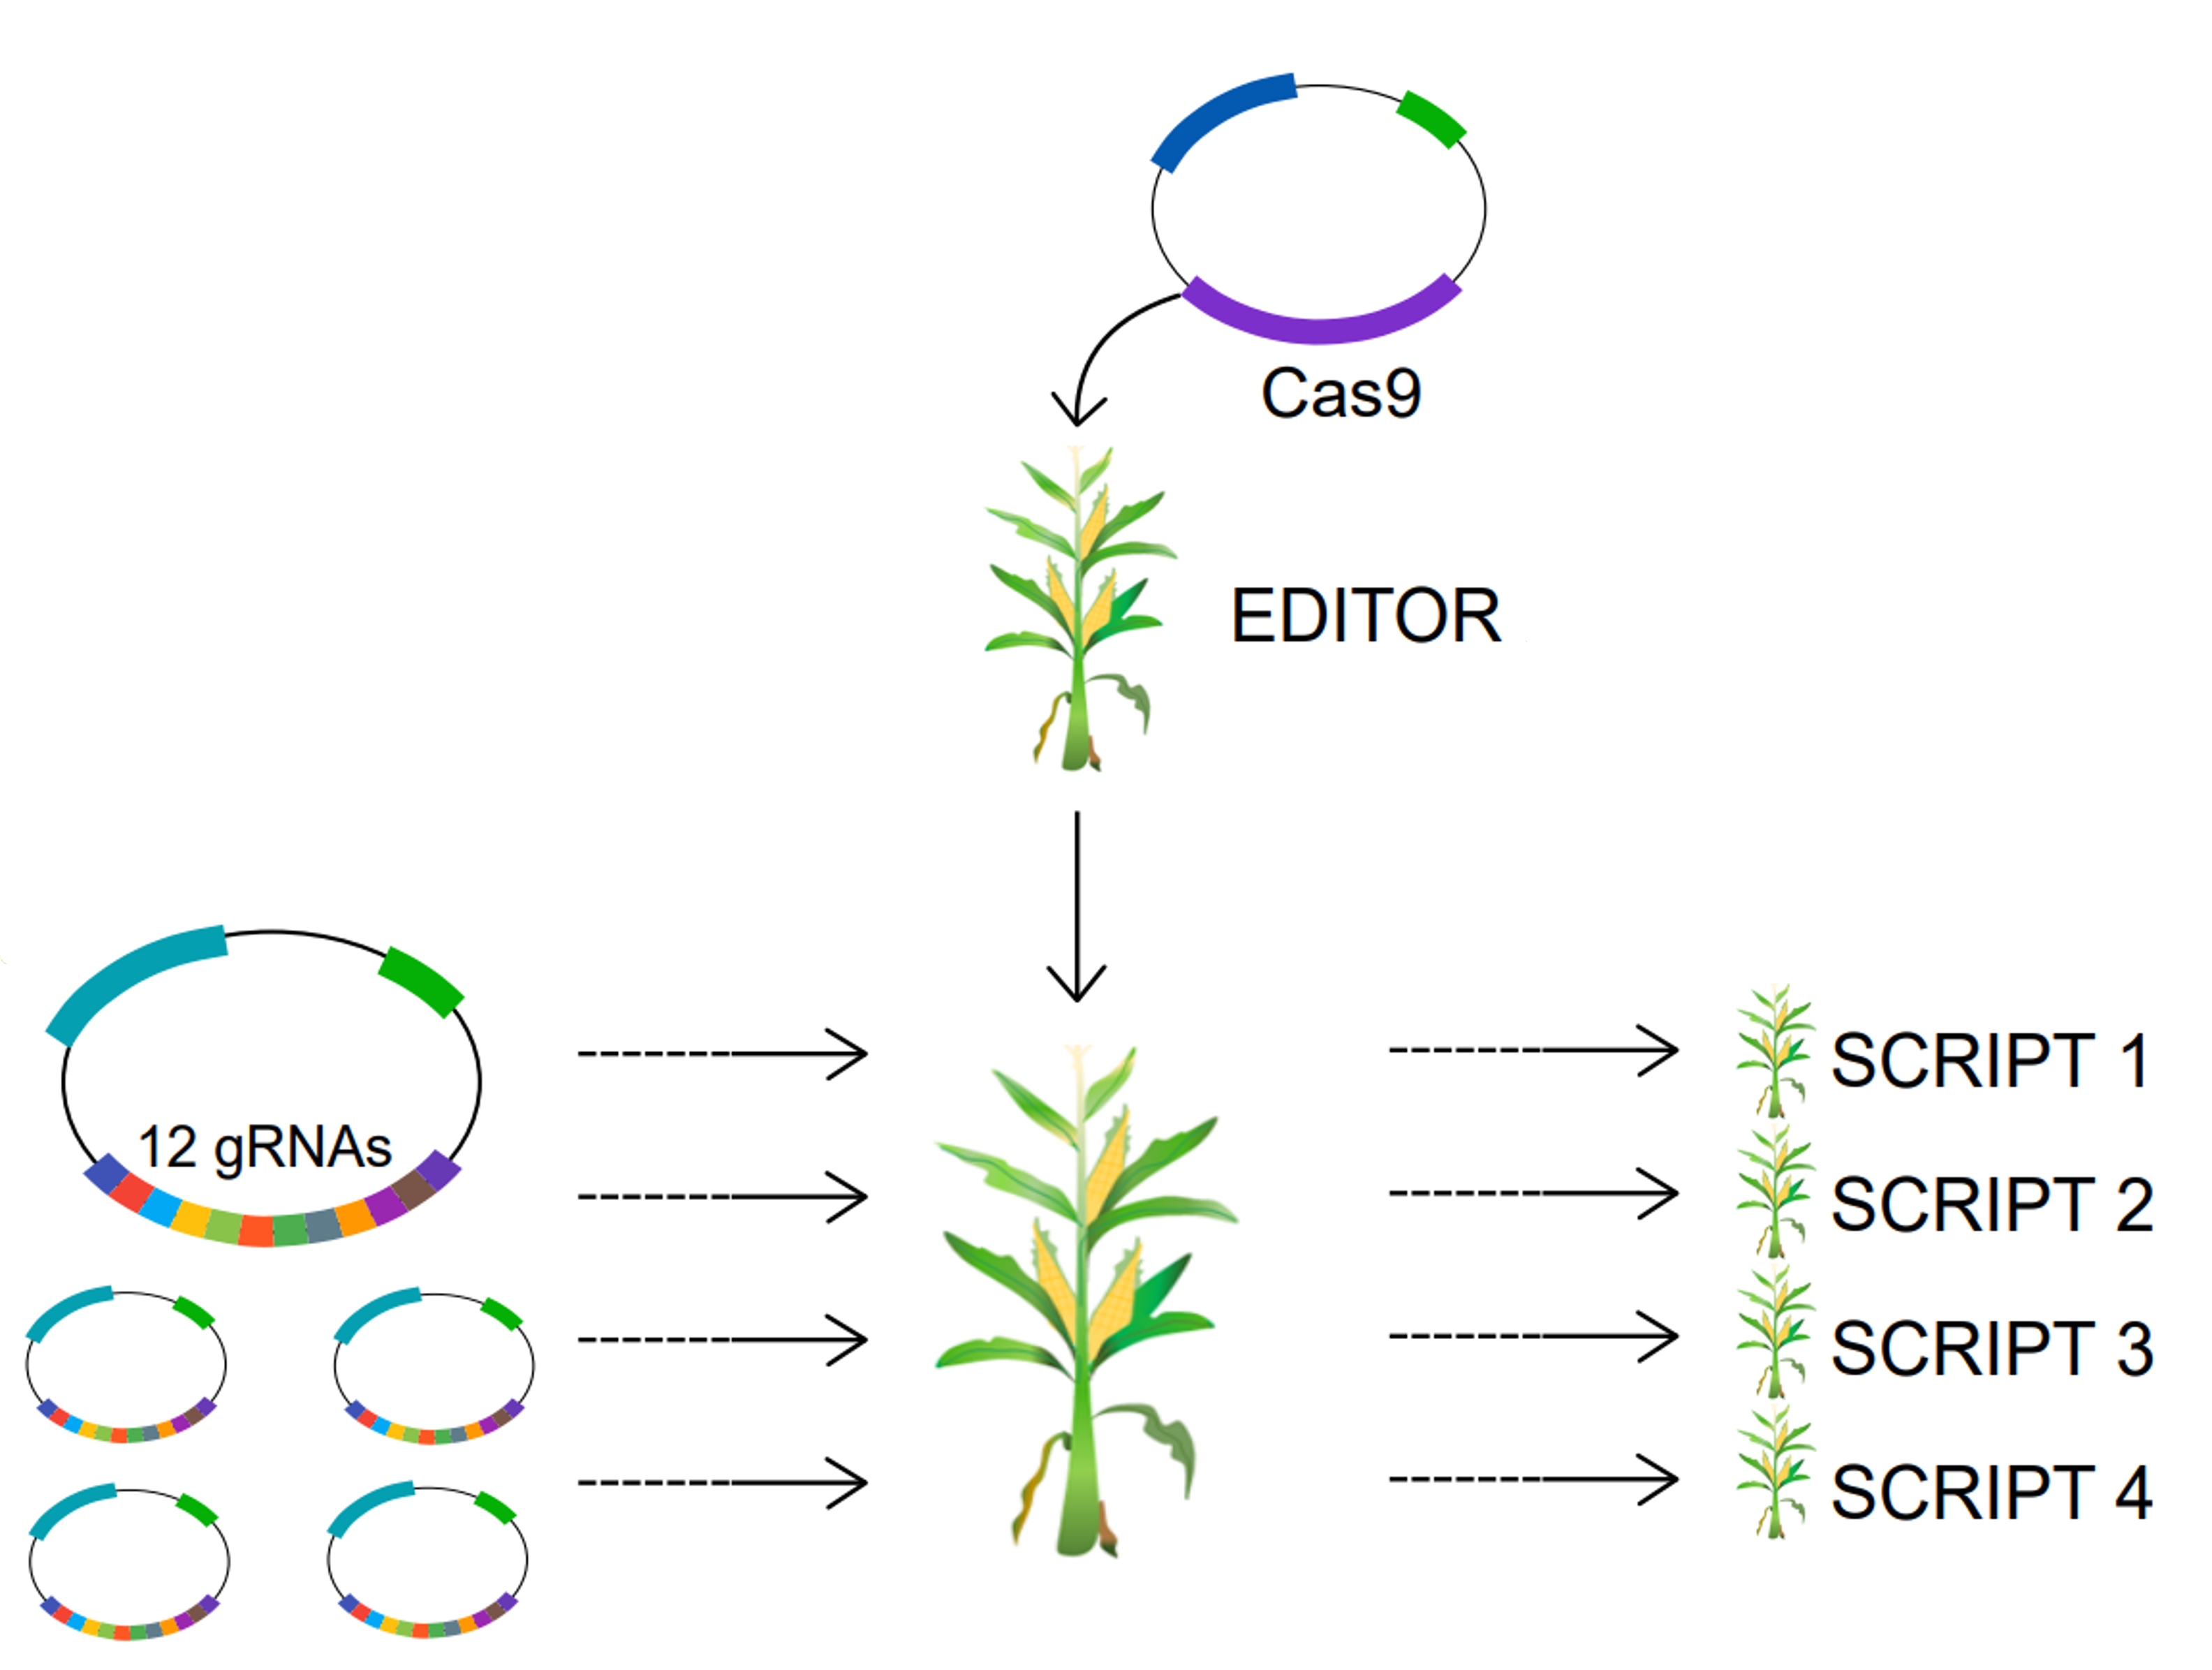 De BREEDIT strategie: 12gRNA's kunnen tegelijk geïntroduceerd worden in een Cas9-bevattende maïsplant (EDITOR). Als resultaat ontstaan multiplex genbewerkte nakomelingen (aangeduid in de figuur als SCRIPT 1-4).